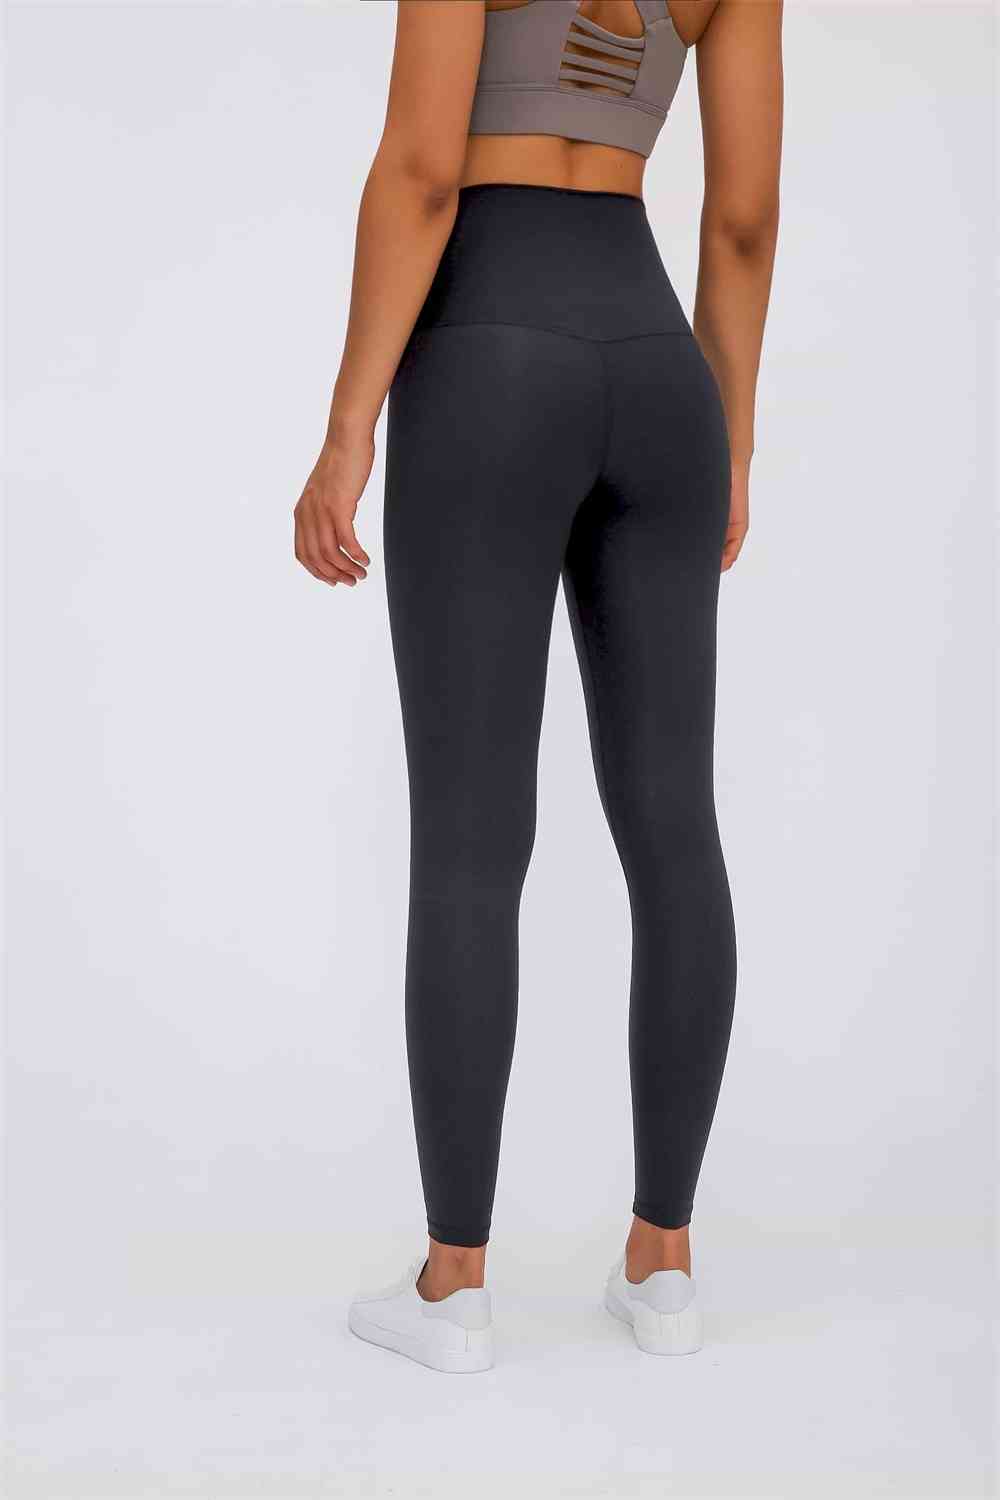 Lumana Leakproof Yoga Pant Leggings, 22 Inseam, Gray, 3X, Single Pair